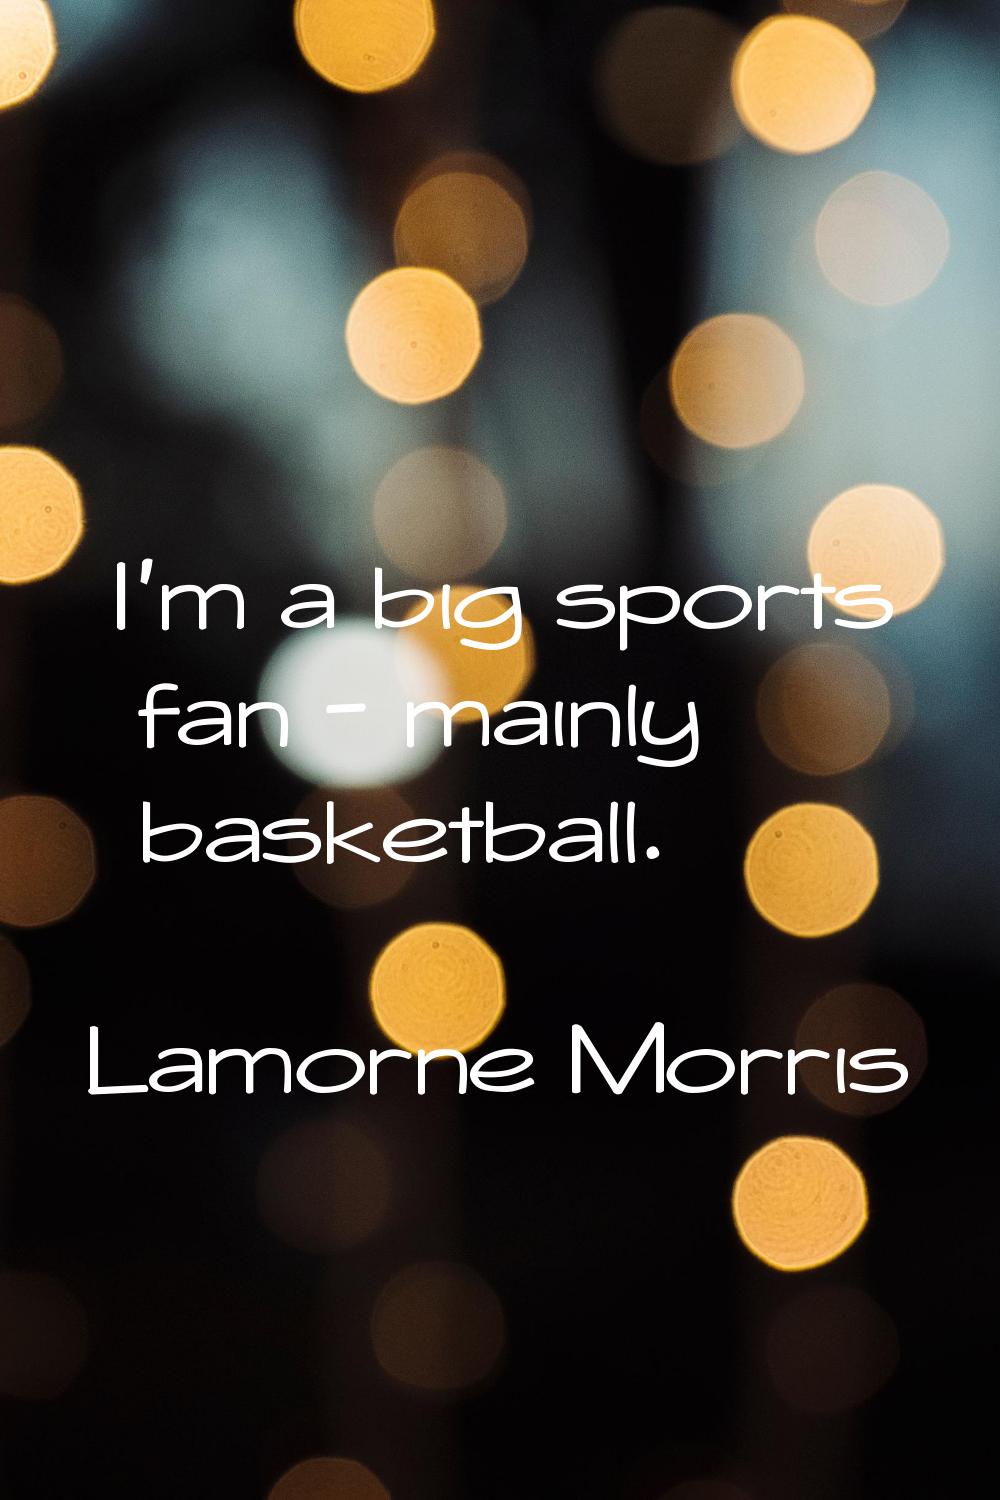 I'm a big sports fan - mainly basketball.